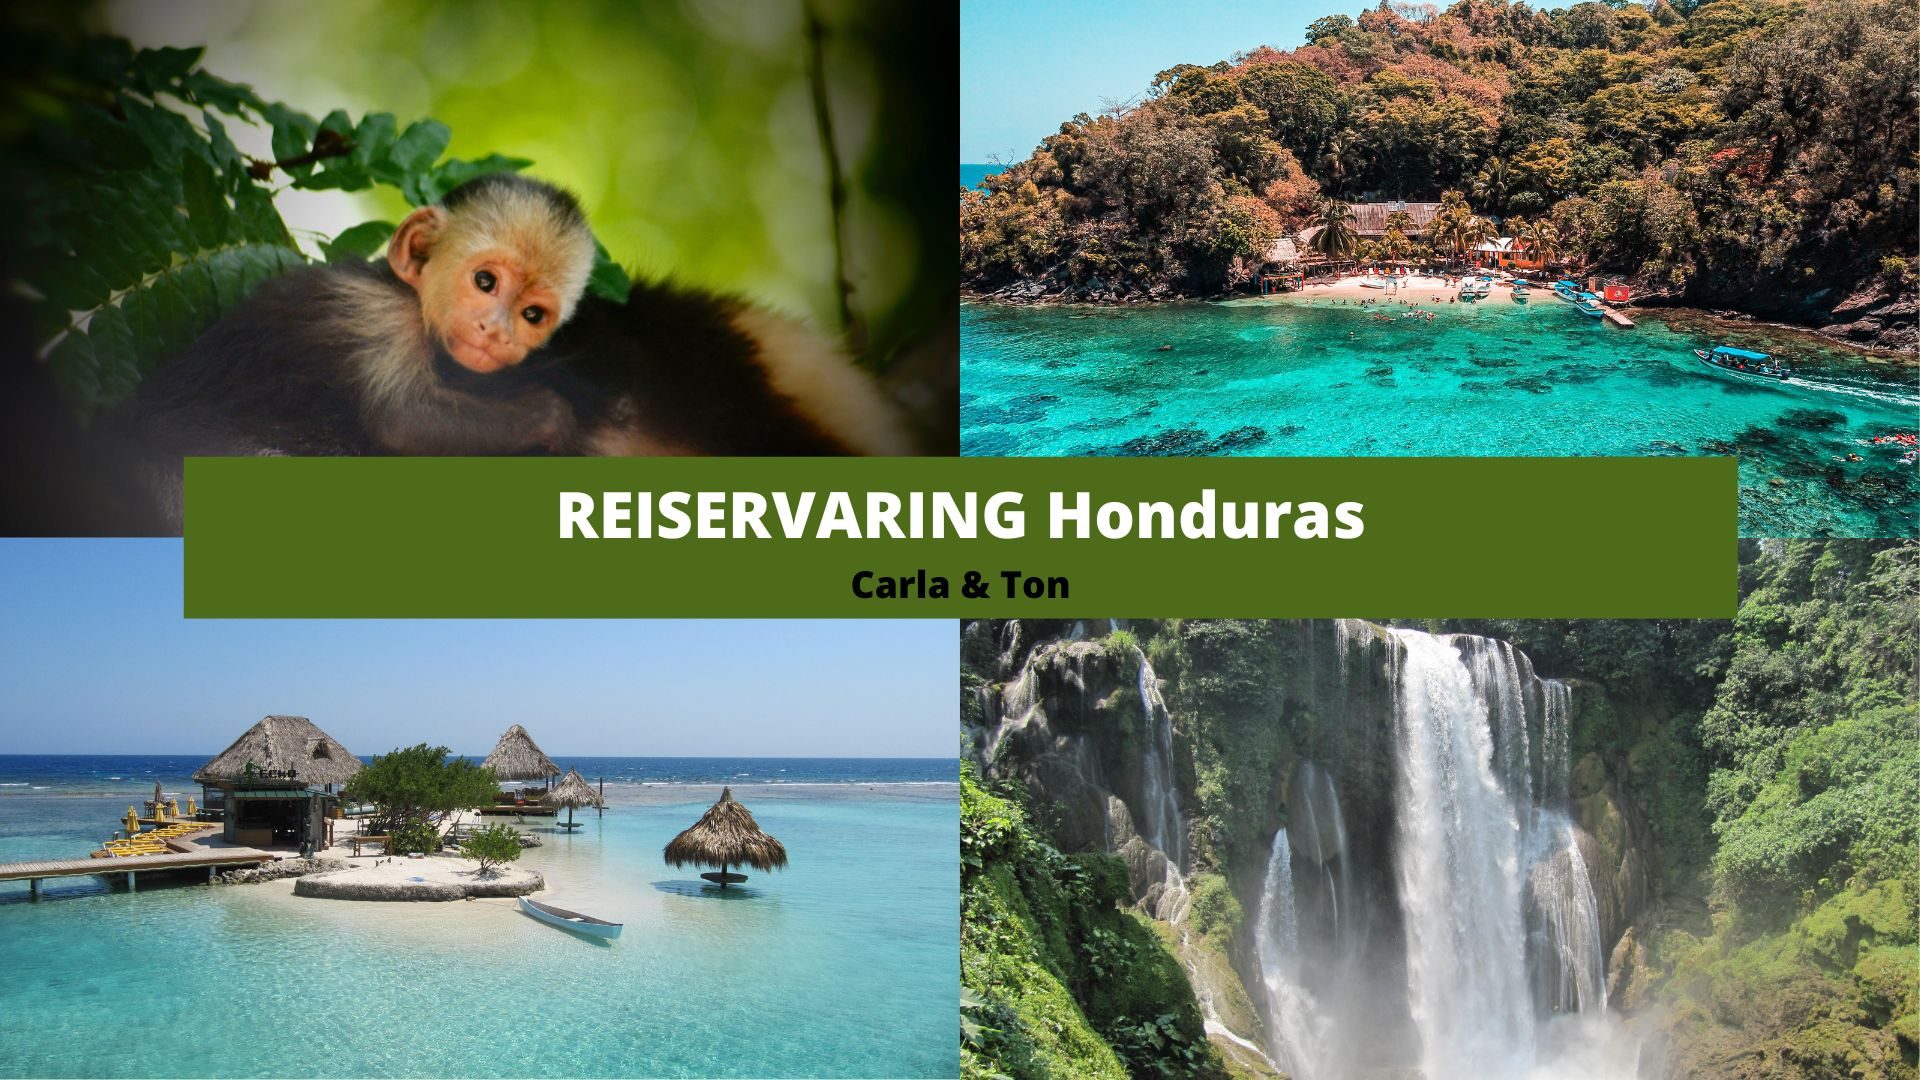 Reiservaring Honduras